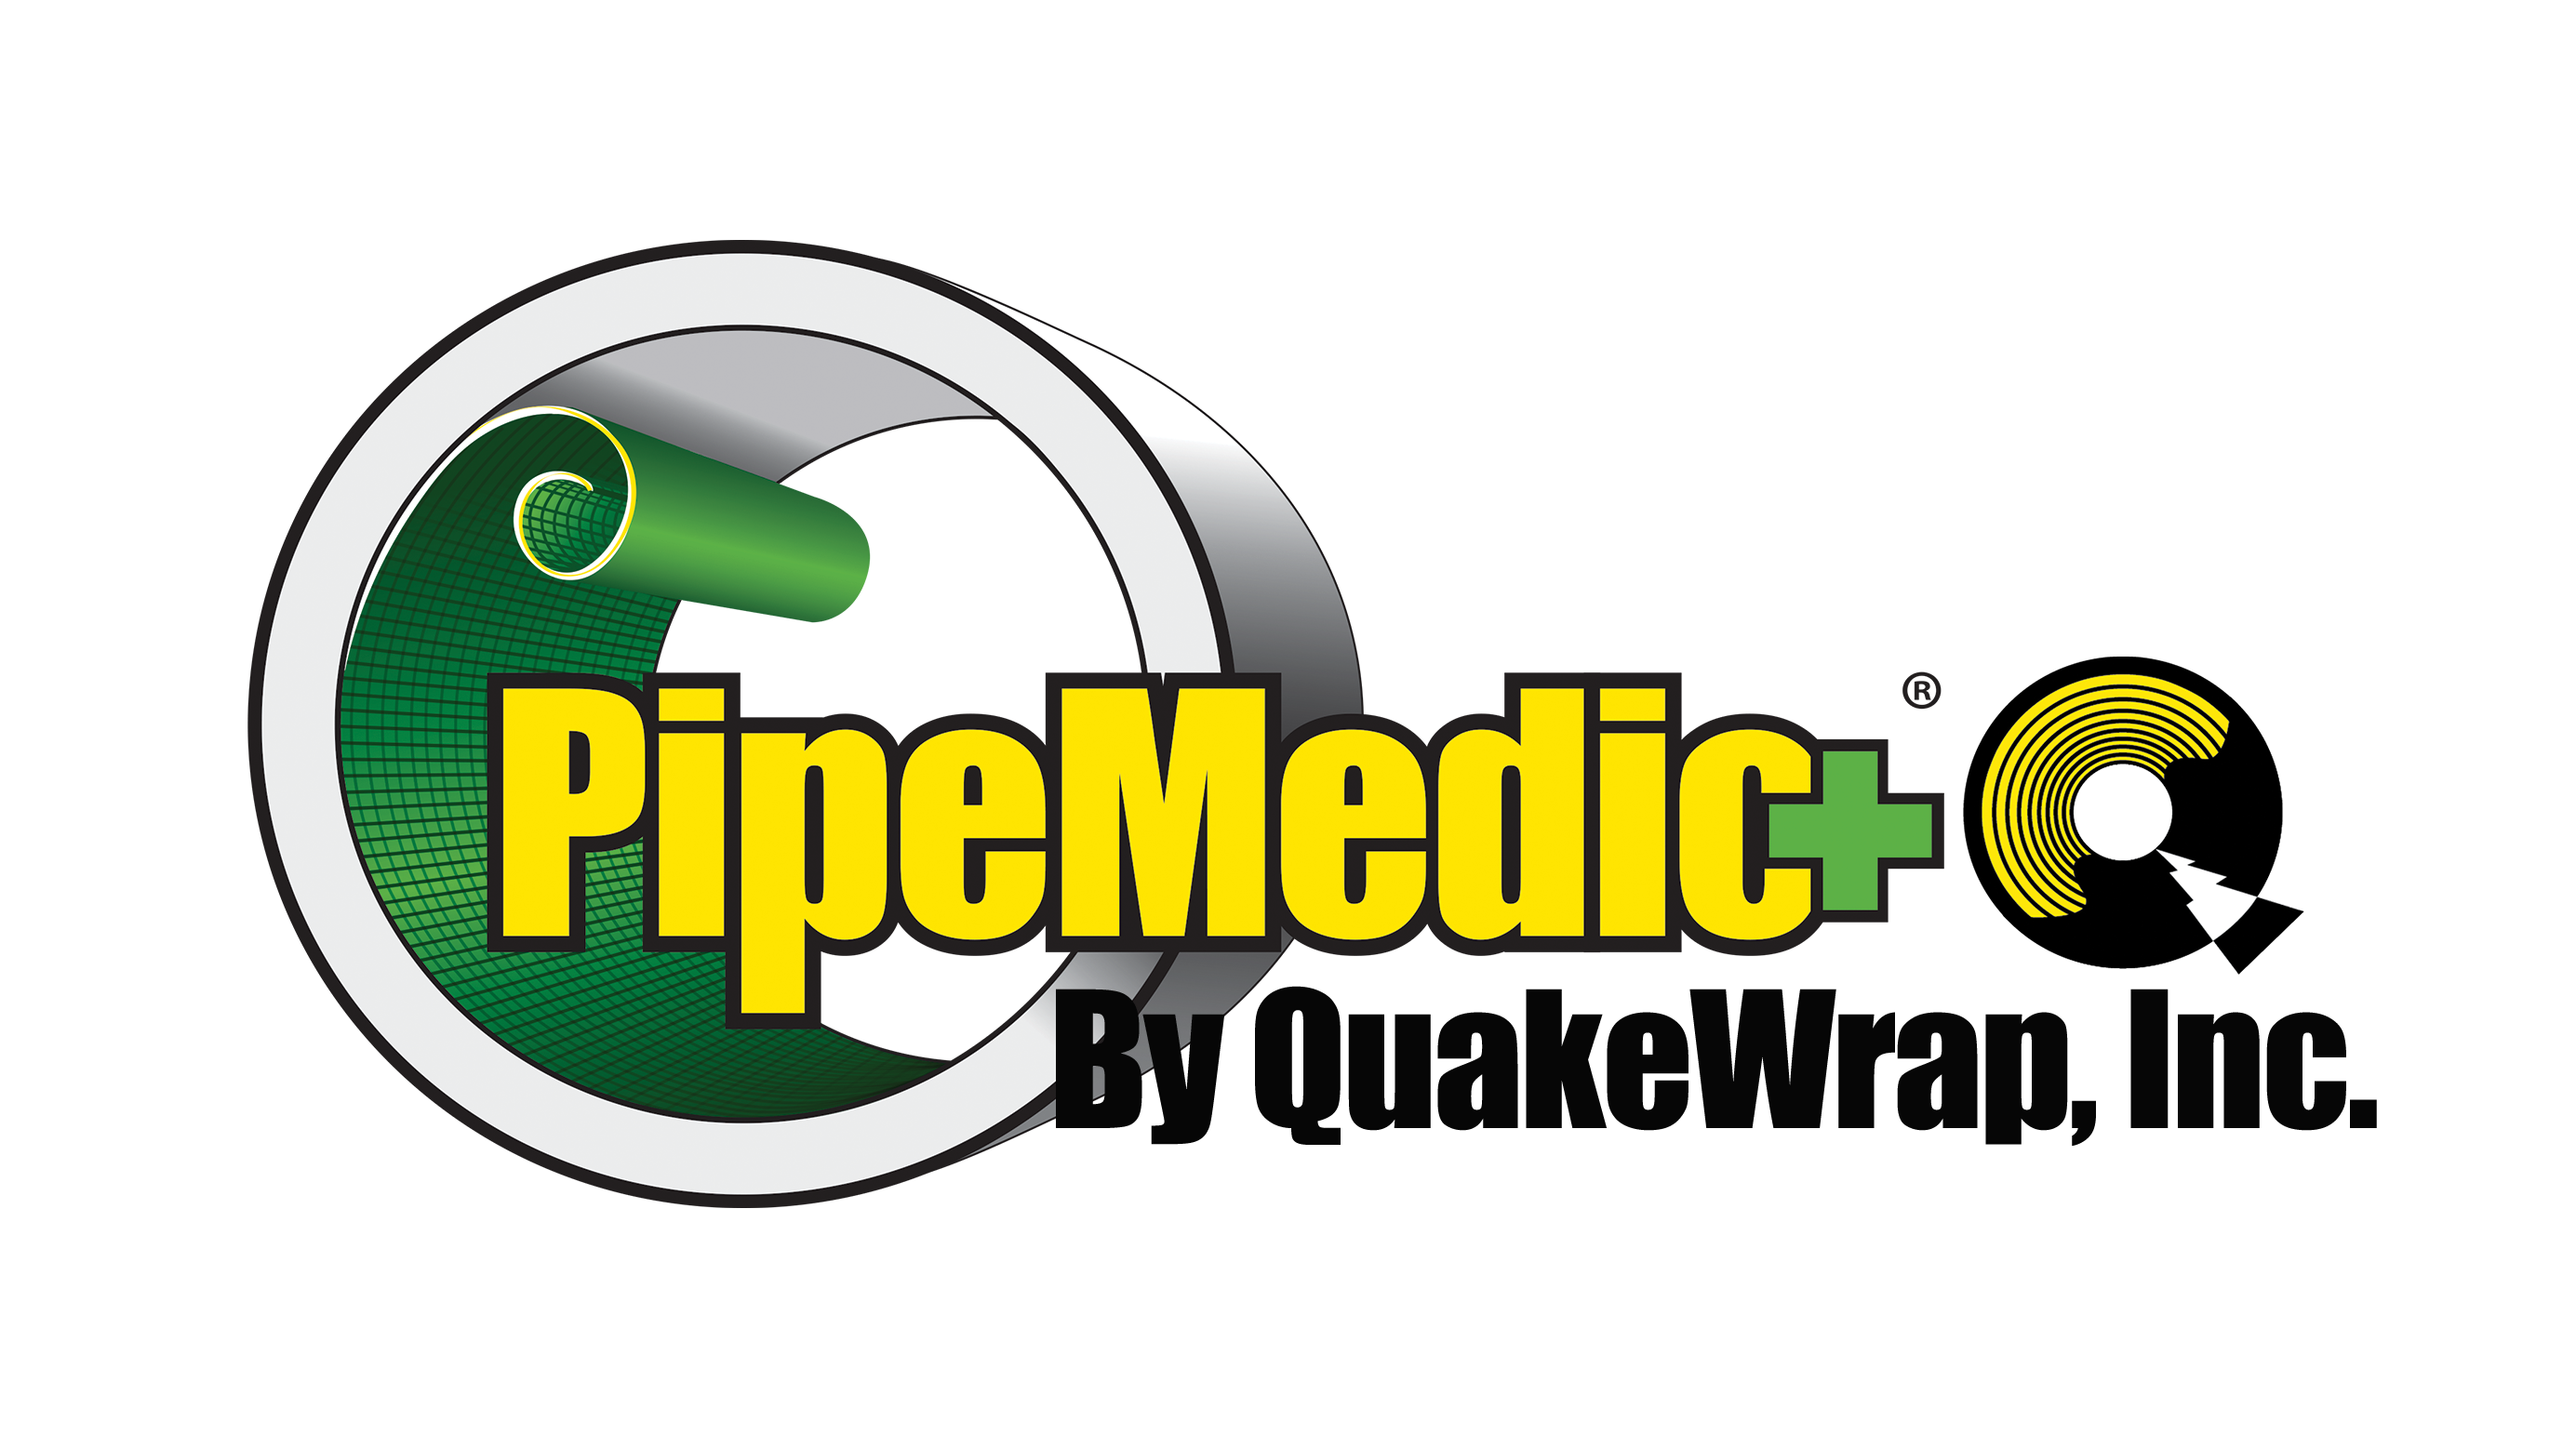 PipeMedic by QuakeWrap